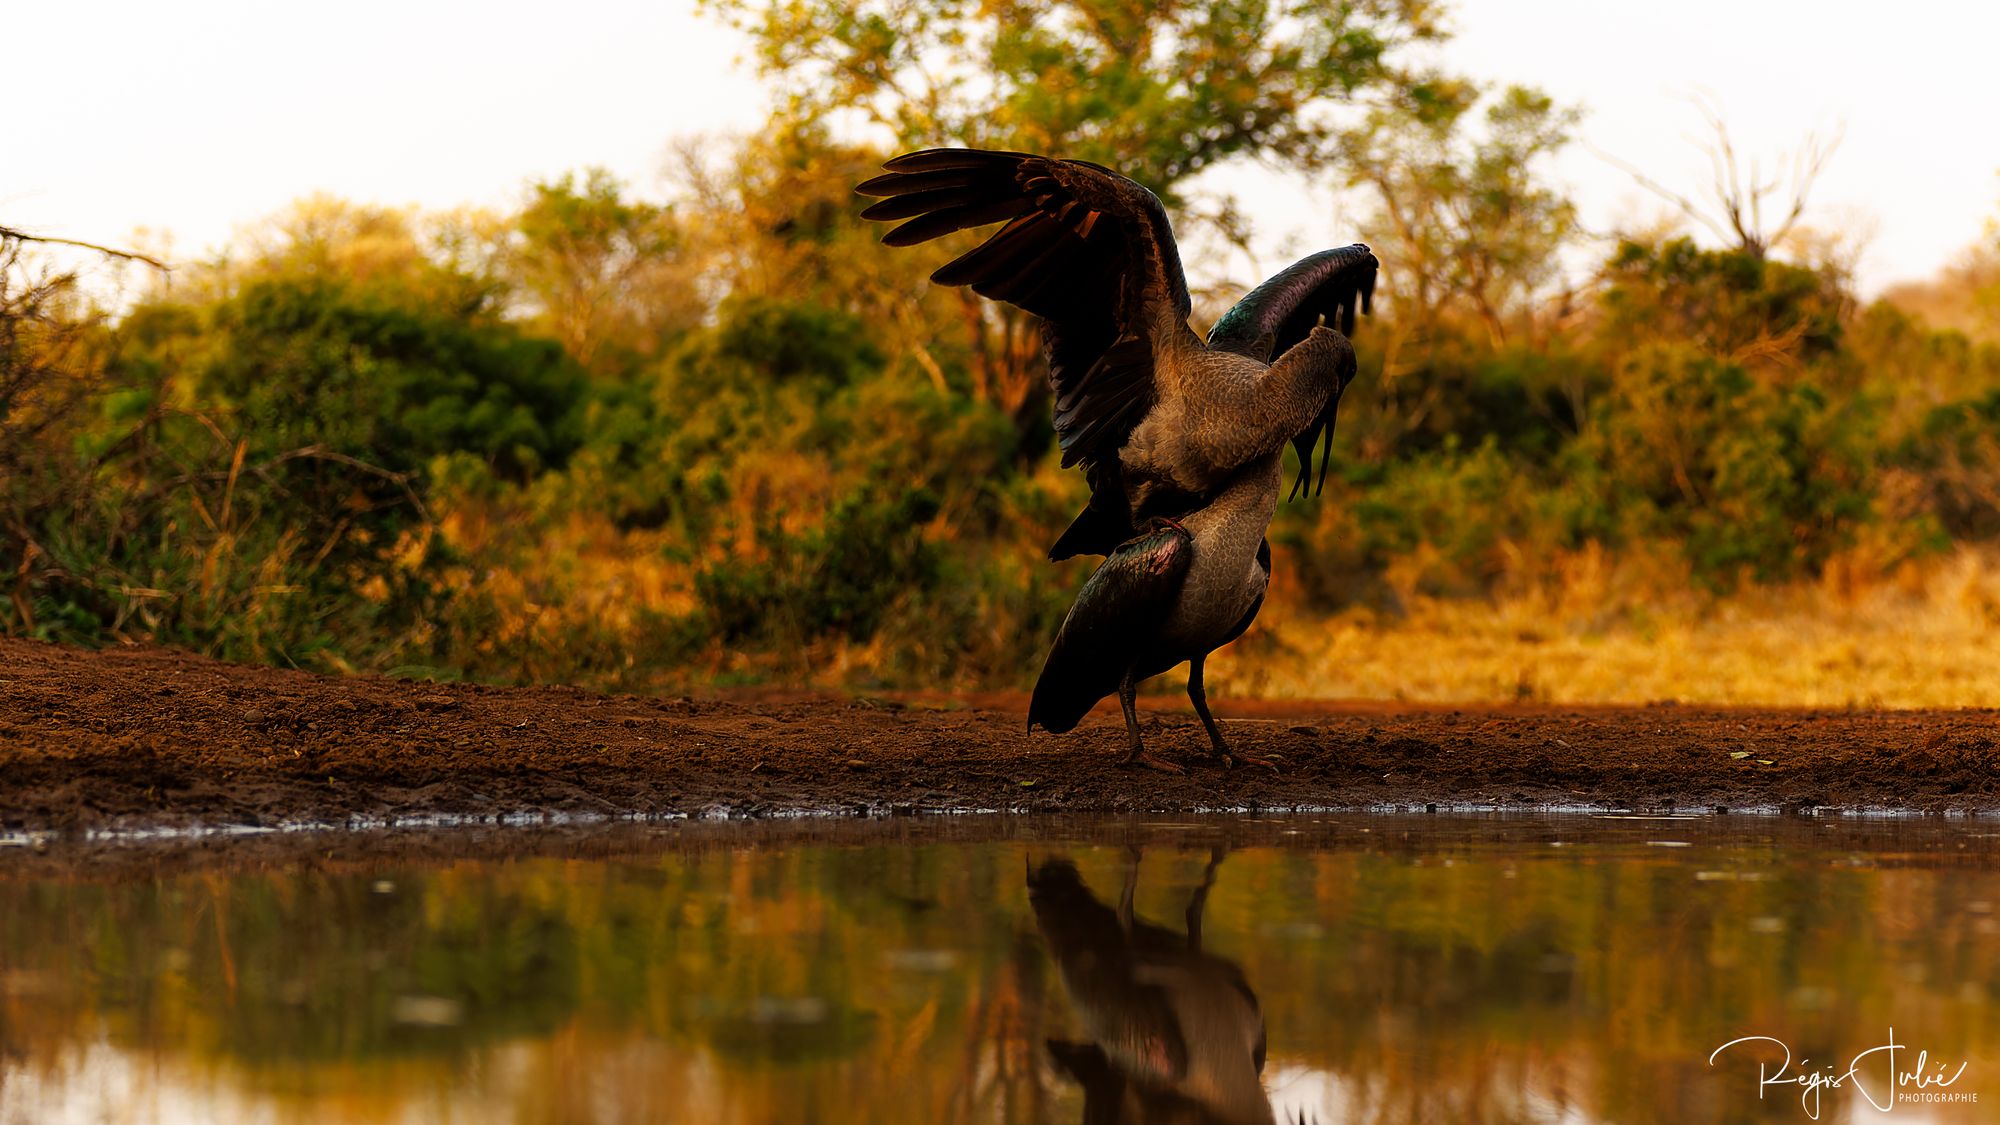 Zimanga : Oiseaux - Interactions